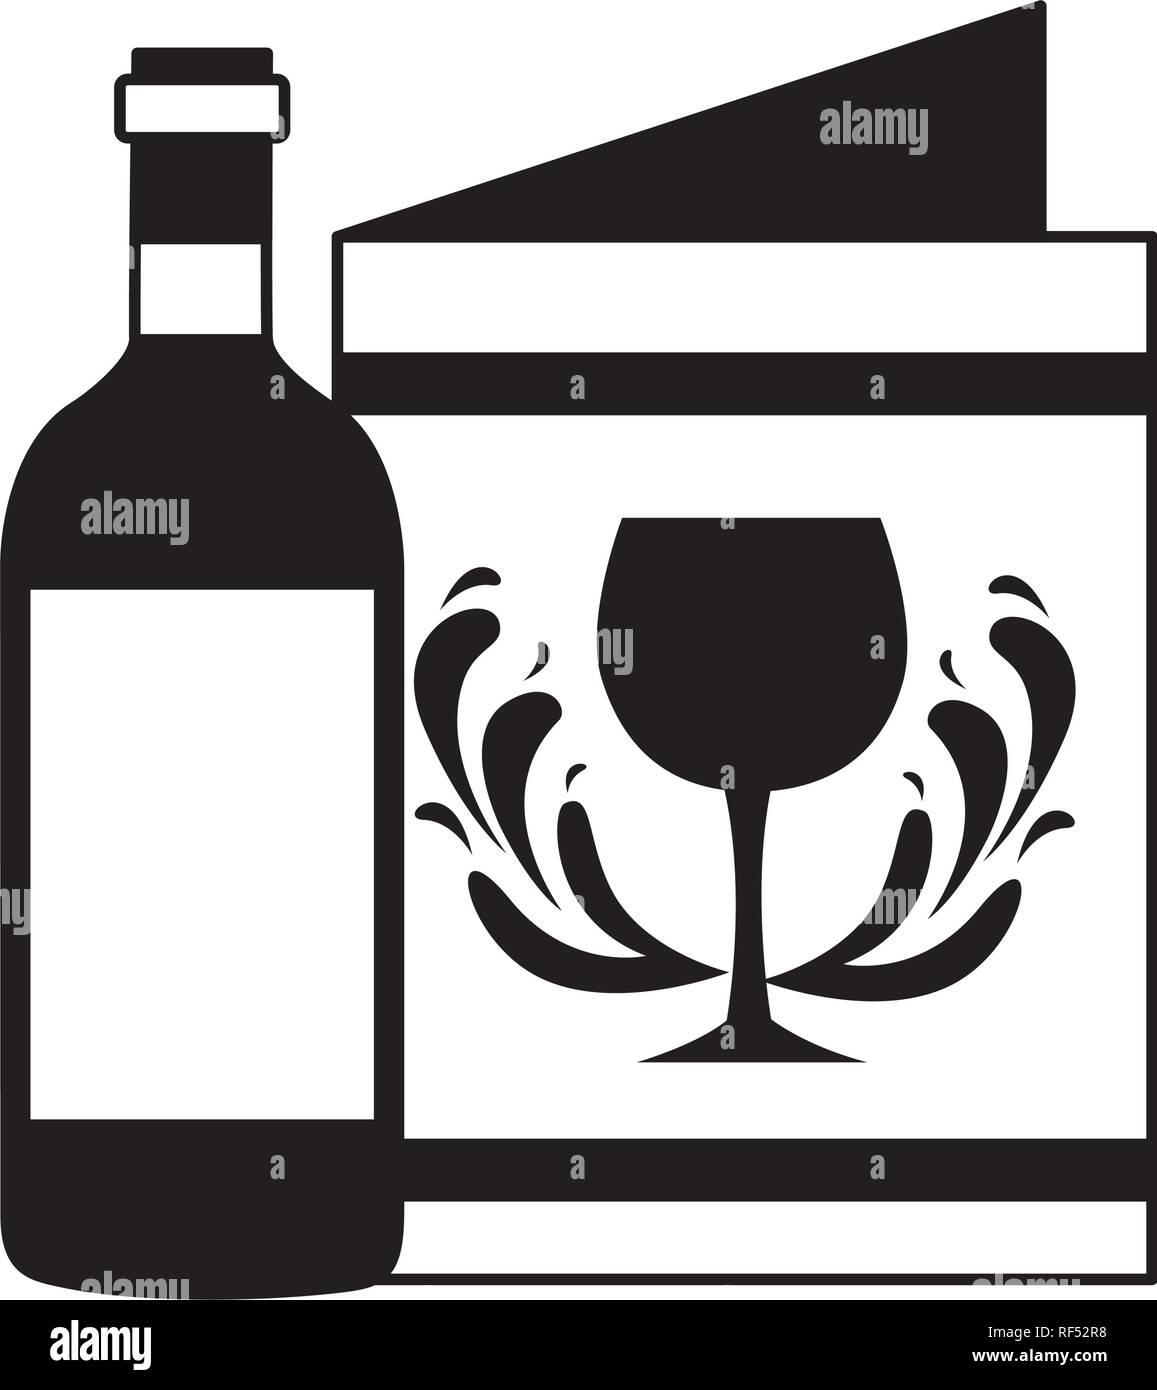 Flasche Wein Restaurant Speisekarte Getränke Stock-Vektorgrafik - Alamy